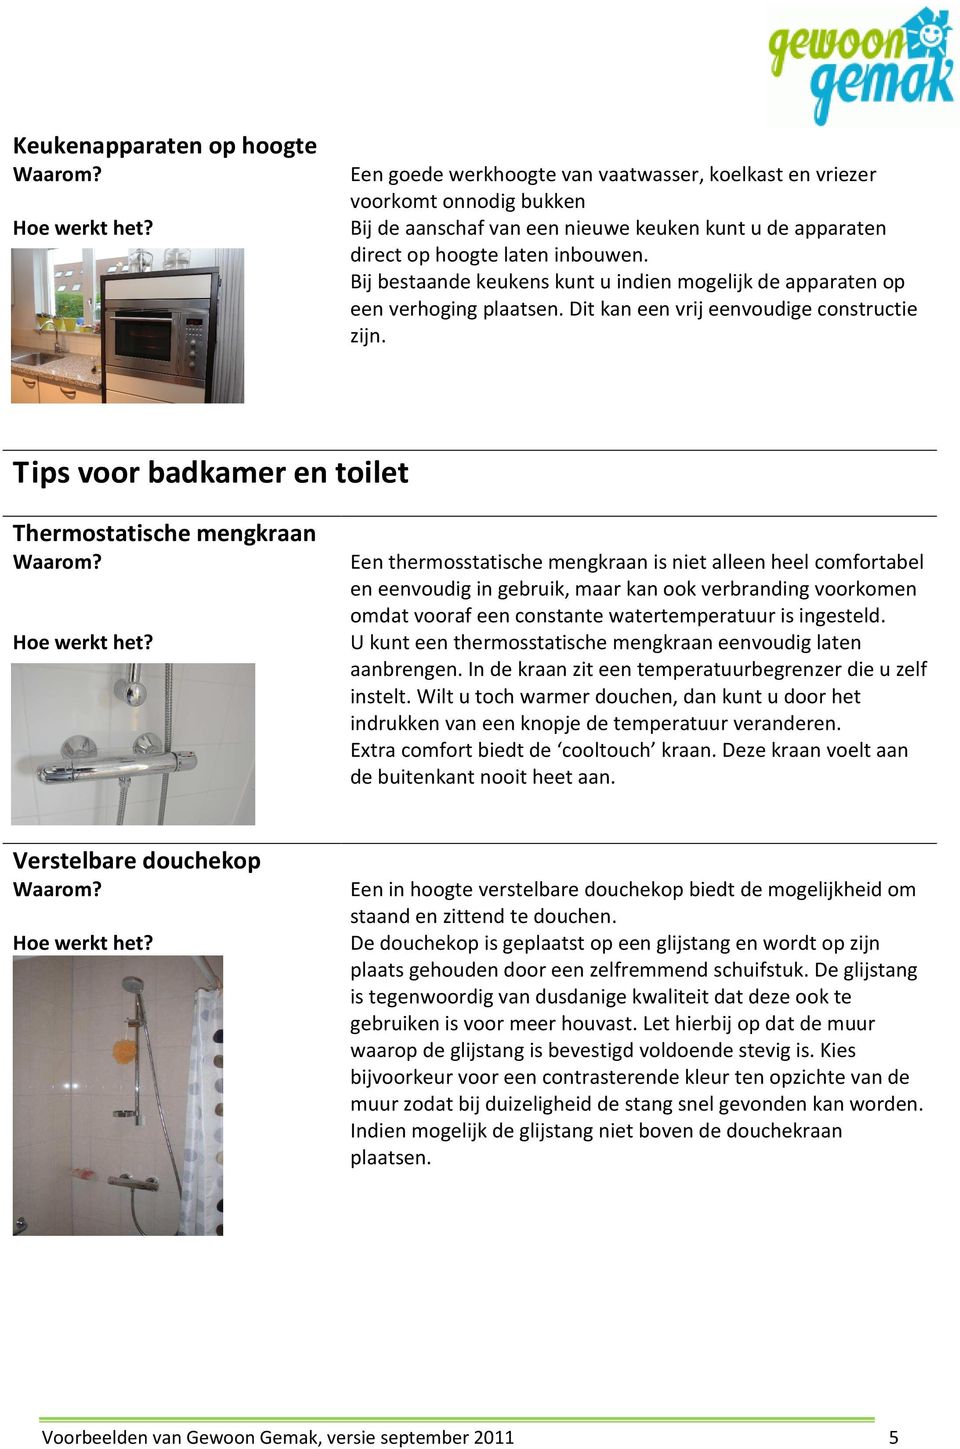 Tips voor badkamer en toilet Thermostatische mengkraan Een thermosstatische mengkraan is niet alleen heel comfortabel en eenvoudig in gebruik, maar kan ook verbranding voorkomen omdat vooraf een